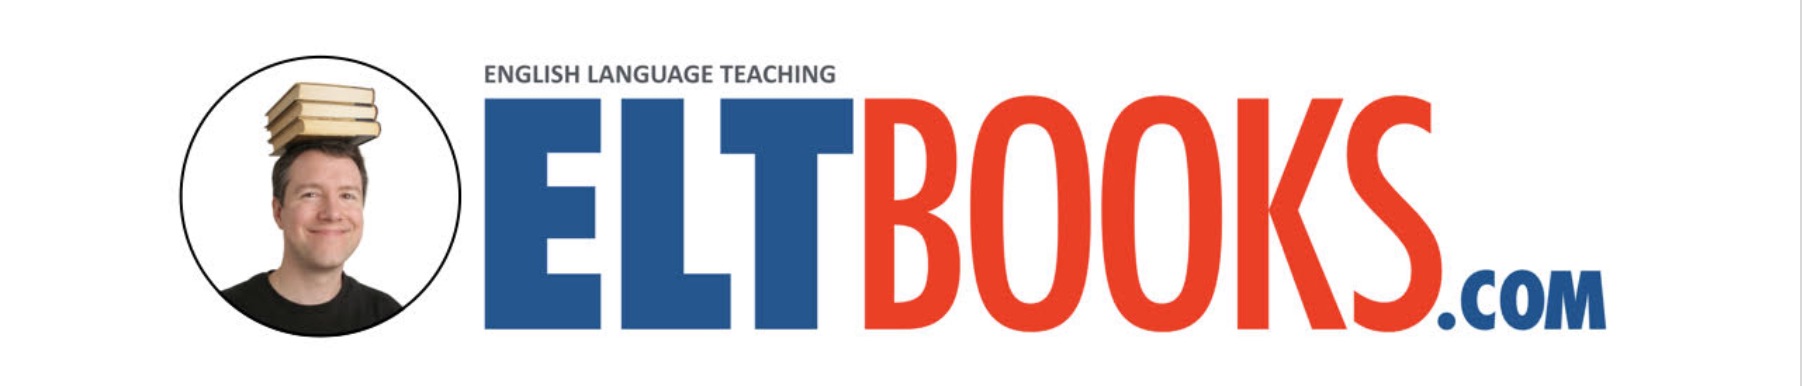 英語教材のオンラインショップ「ELTBOOKS」 : 各種リーダーズと教材を割引価格で